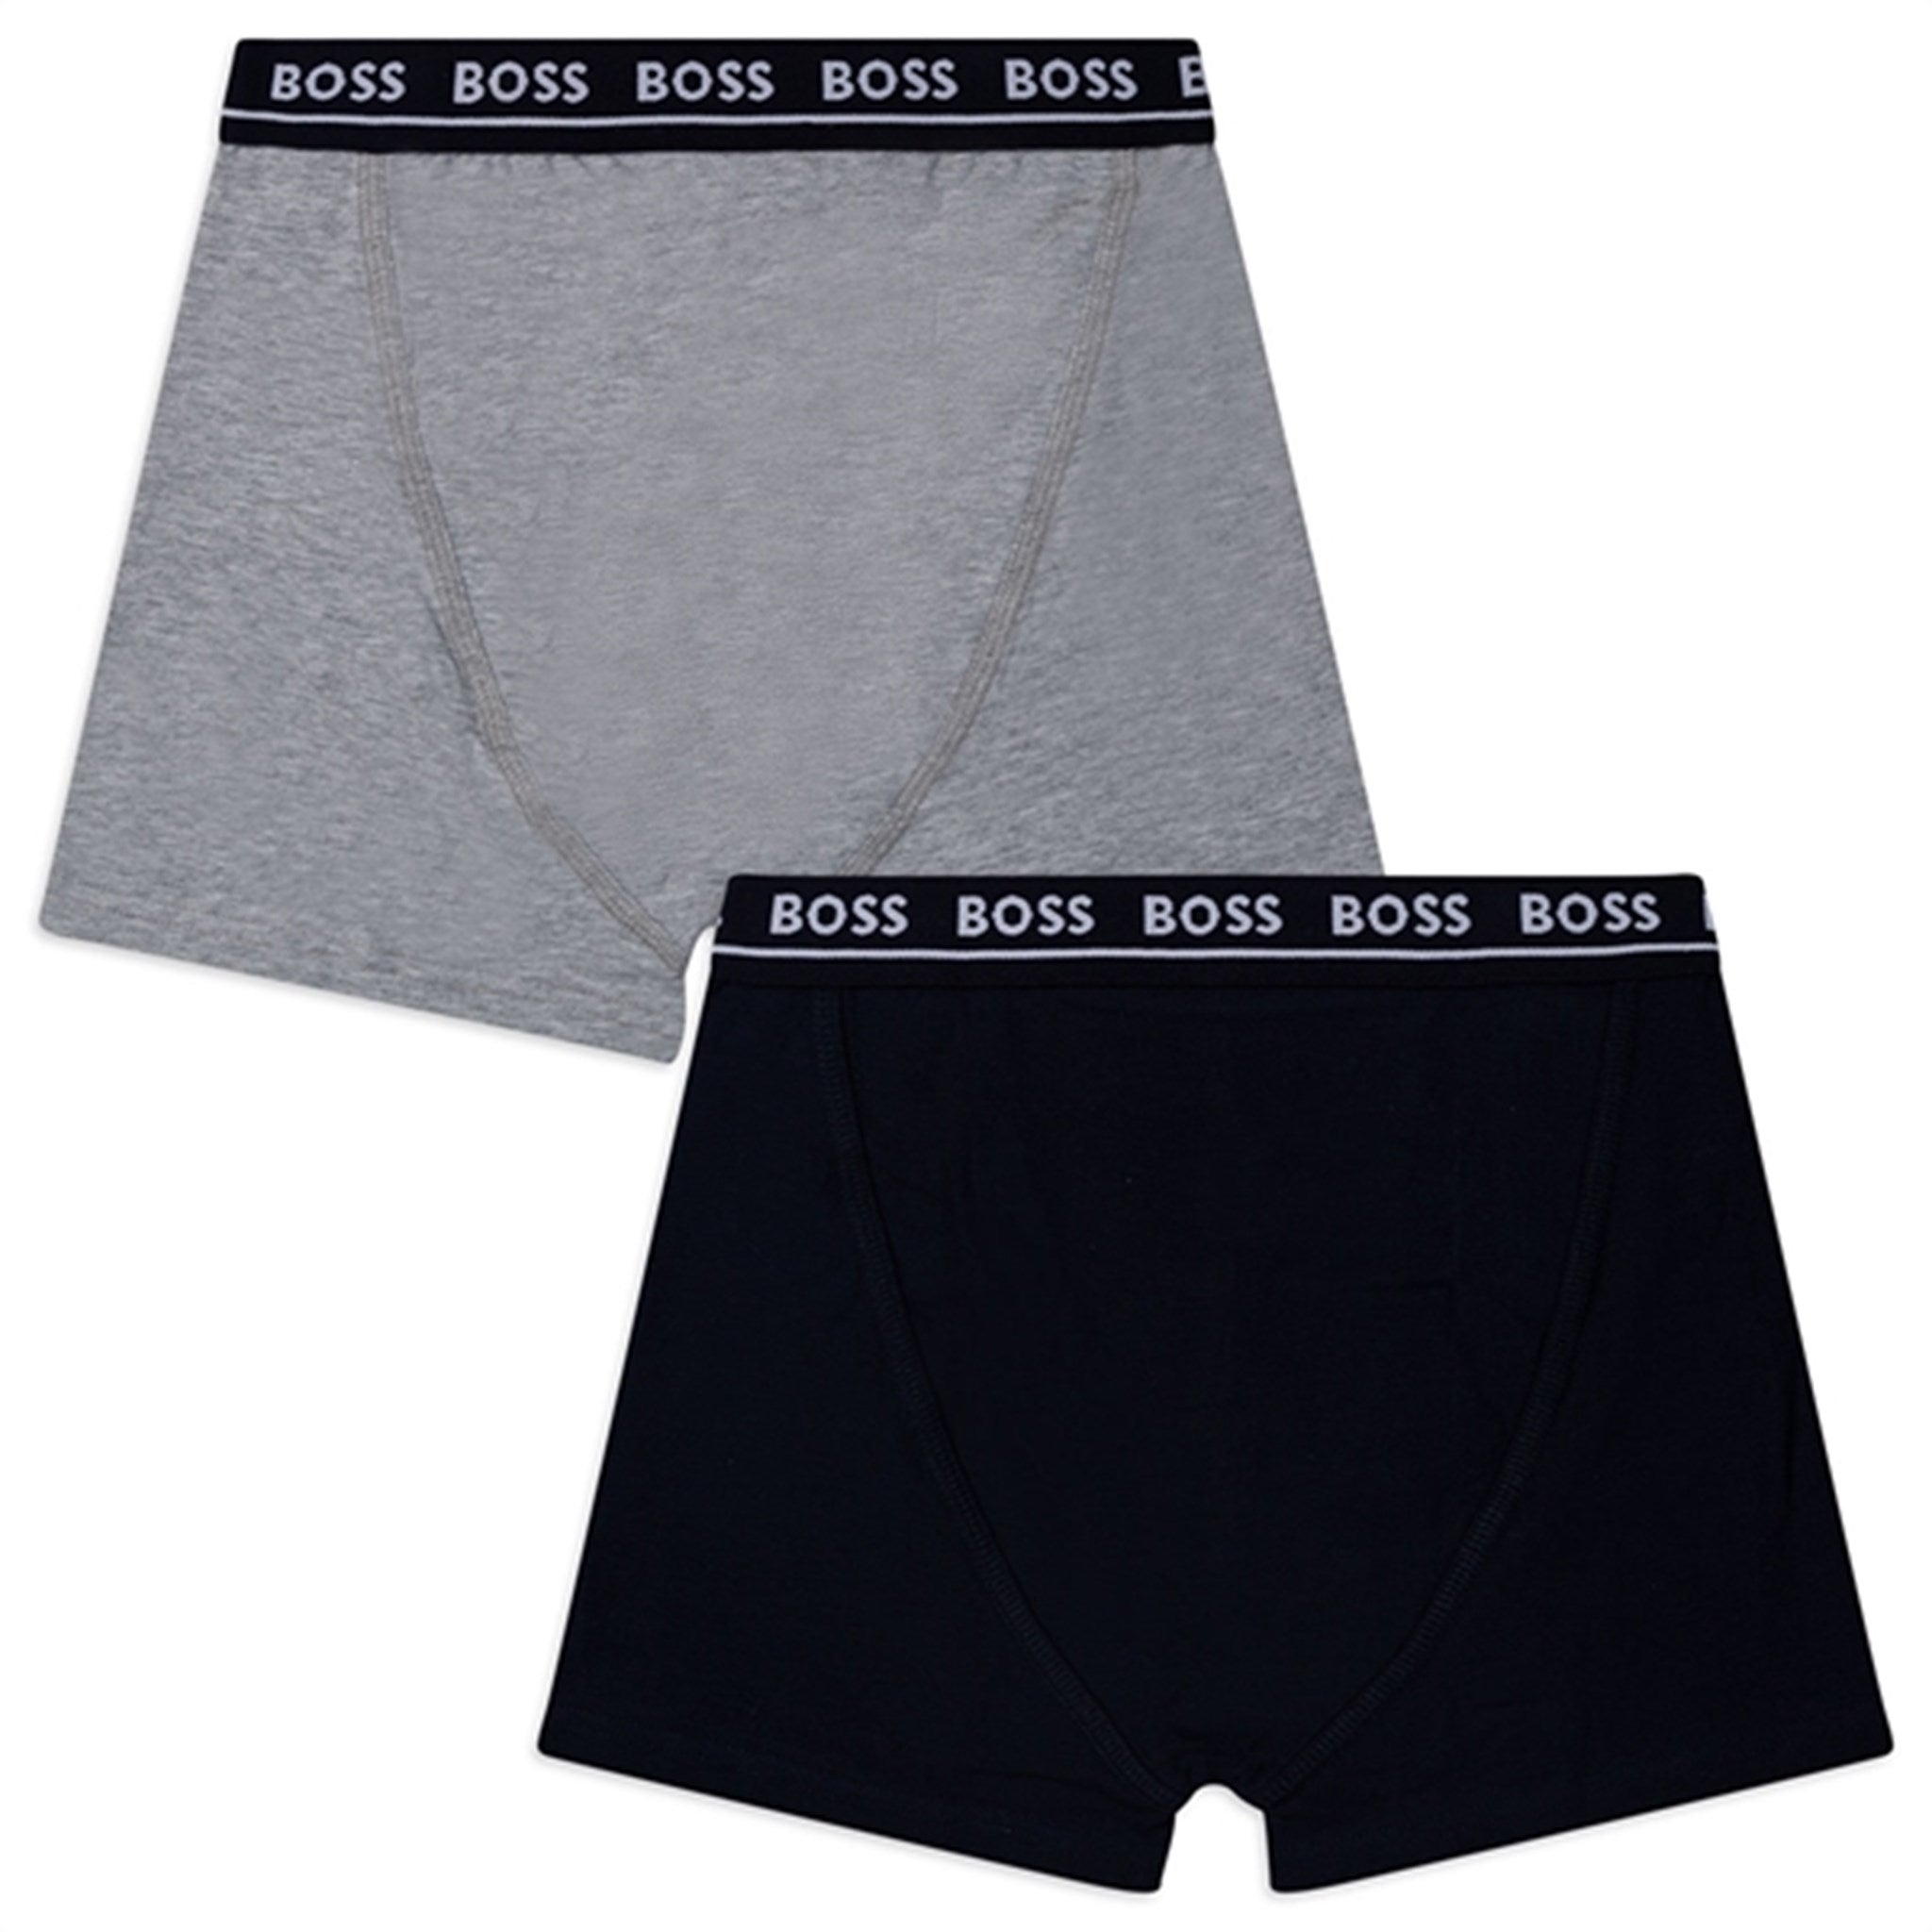 Hugo Boss Boxer Shorts 2-pack Black 5